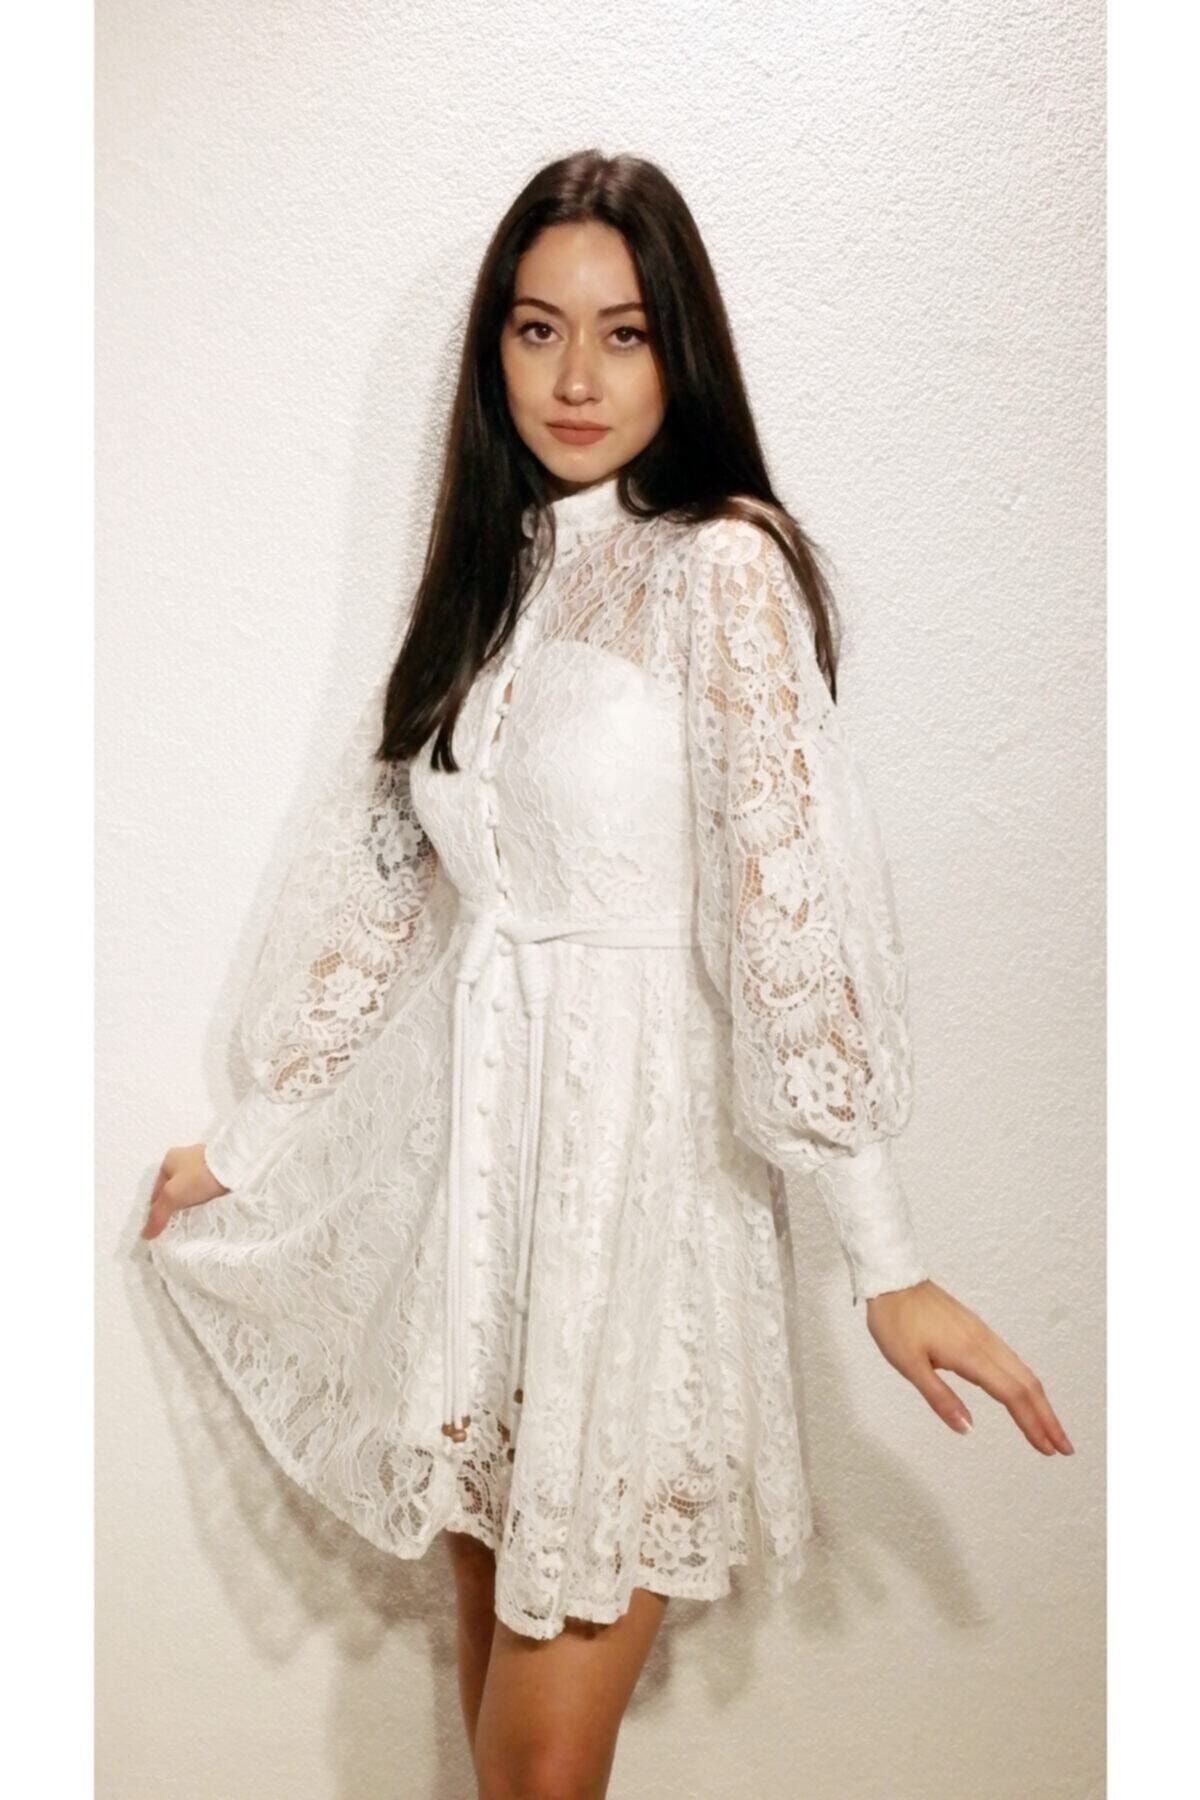 Özel Tasarım Güpür Elbise Yeni Sezon Güpür Elbise Dantel Elbise Orjinal Görsel